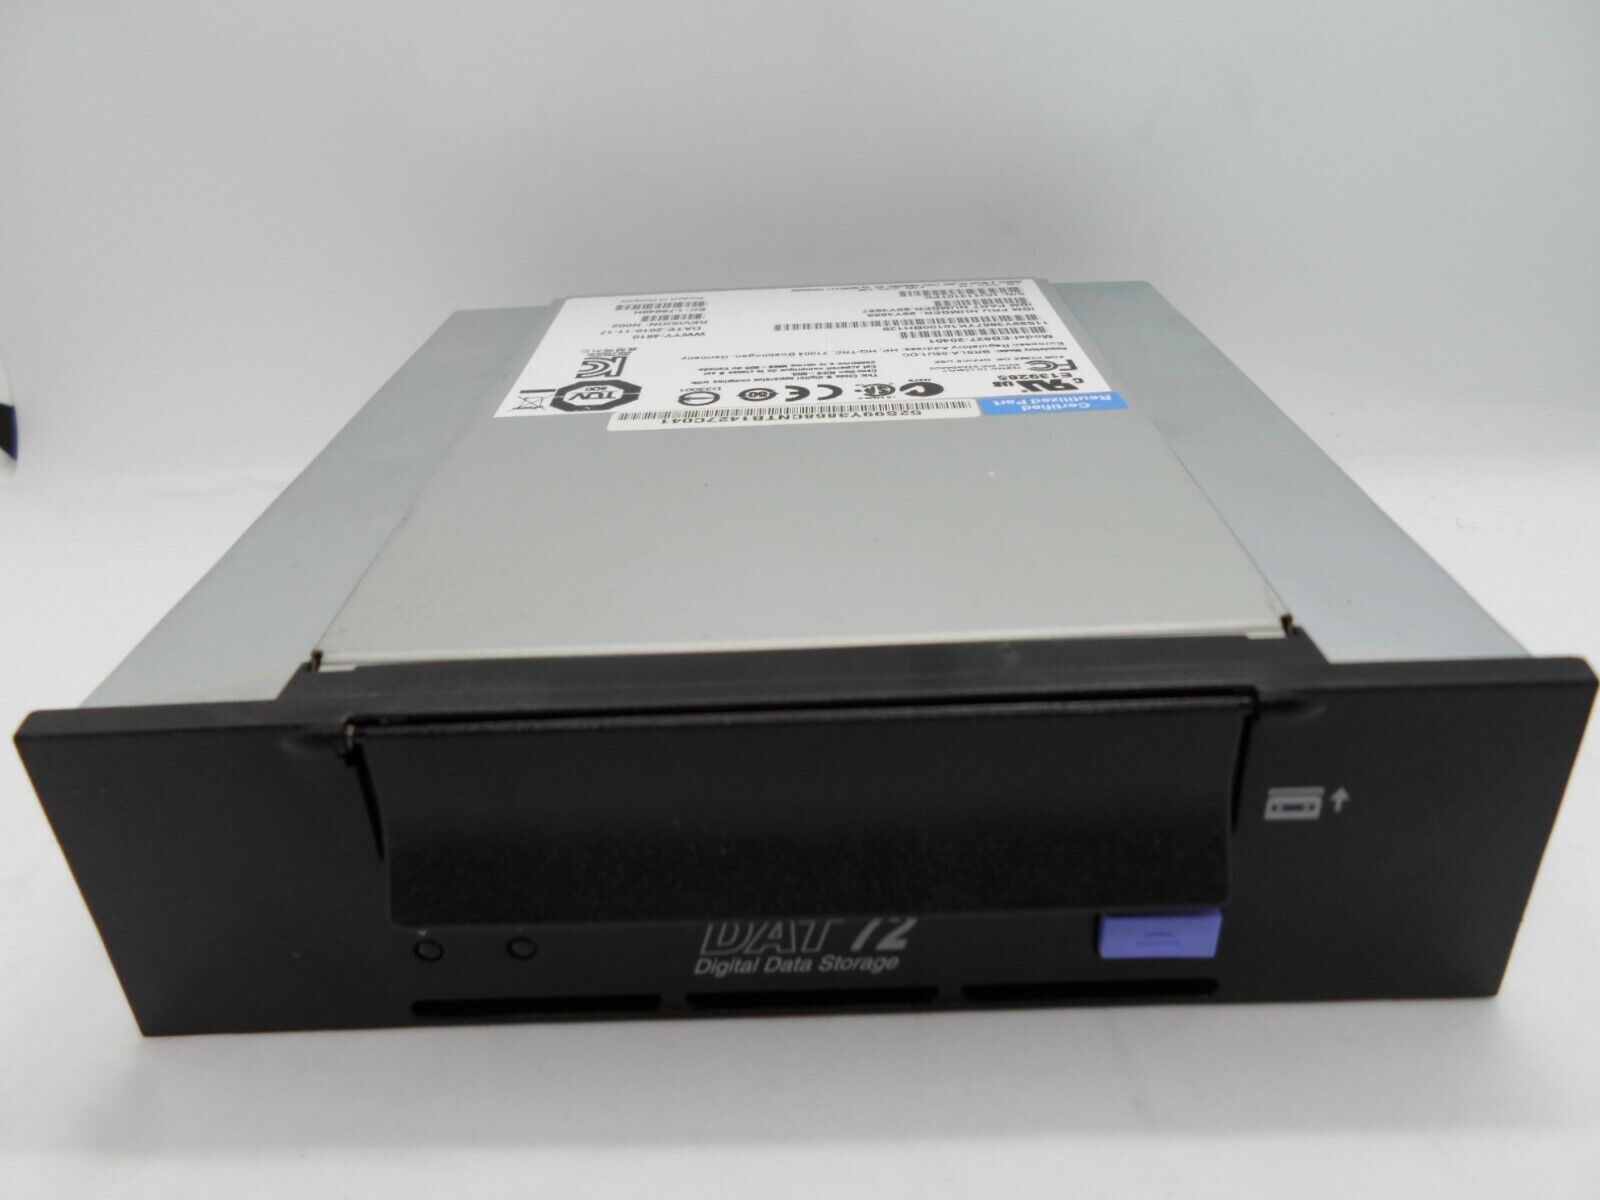 IBM DAT72 DDS5 4MM USB Internal Tape Drive 5.25